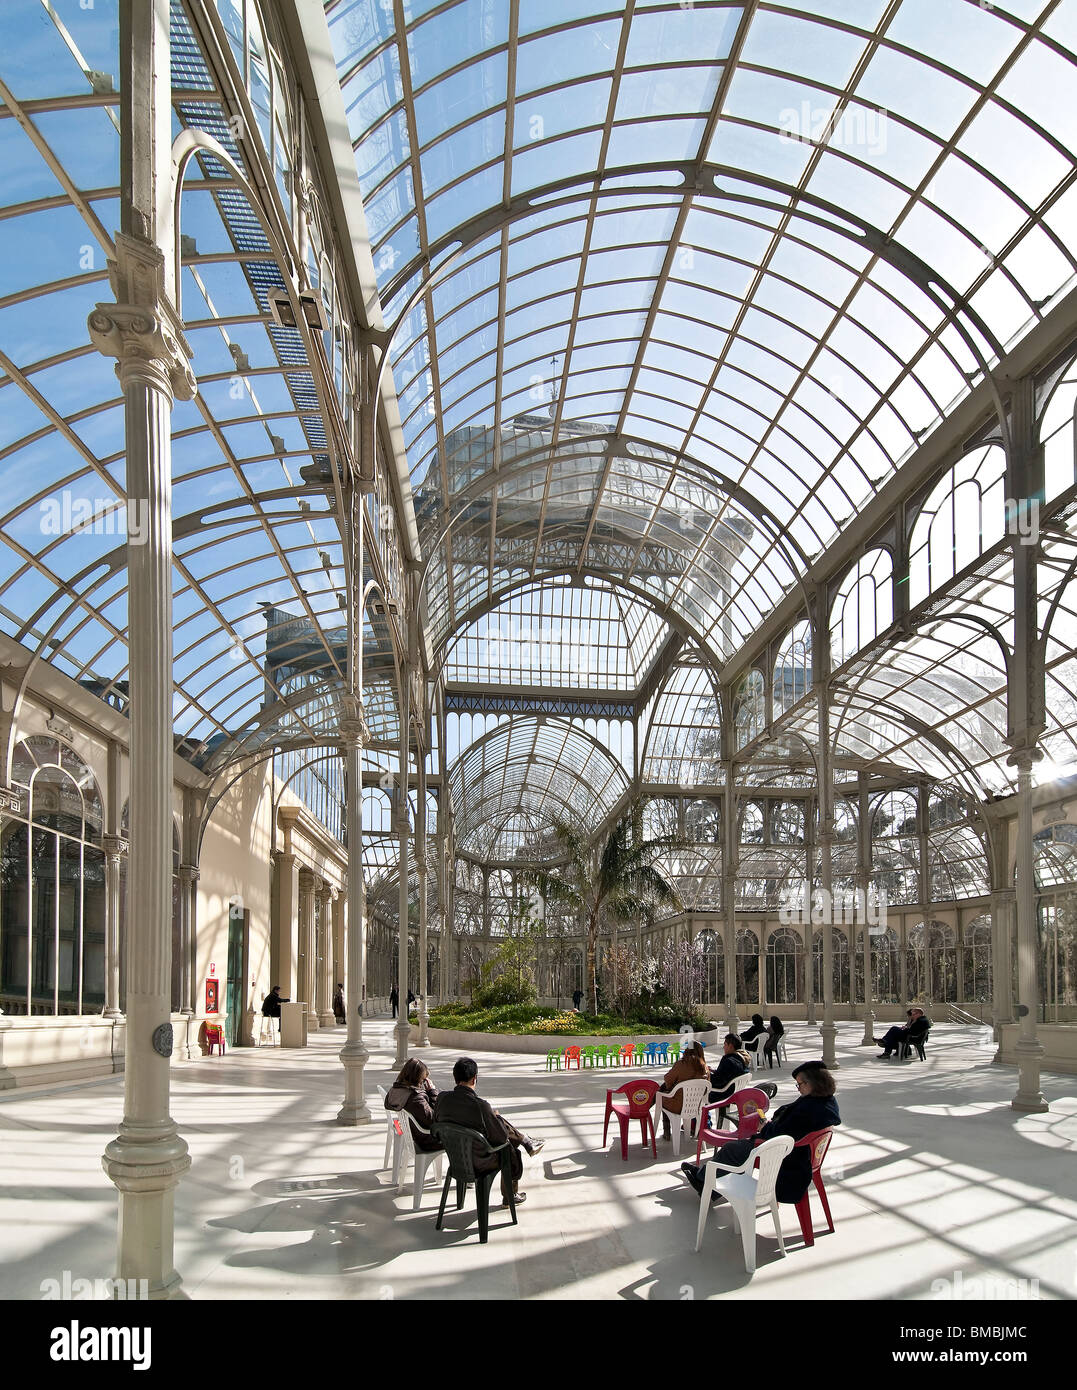 L'interno del Palacio de Cristal, Crystal Palace, nel Parco del Retiro nel centro di Madrid, Spagna Foto Stock